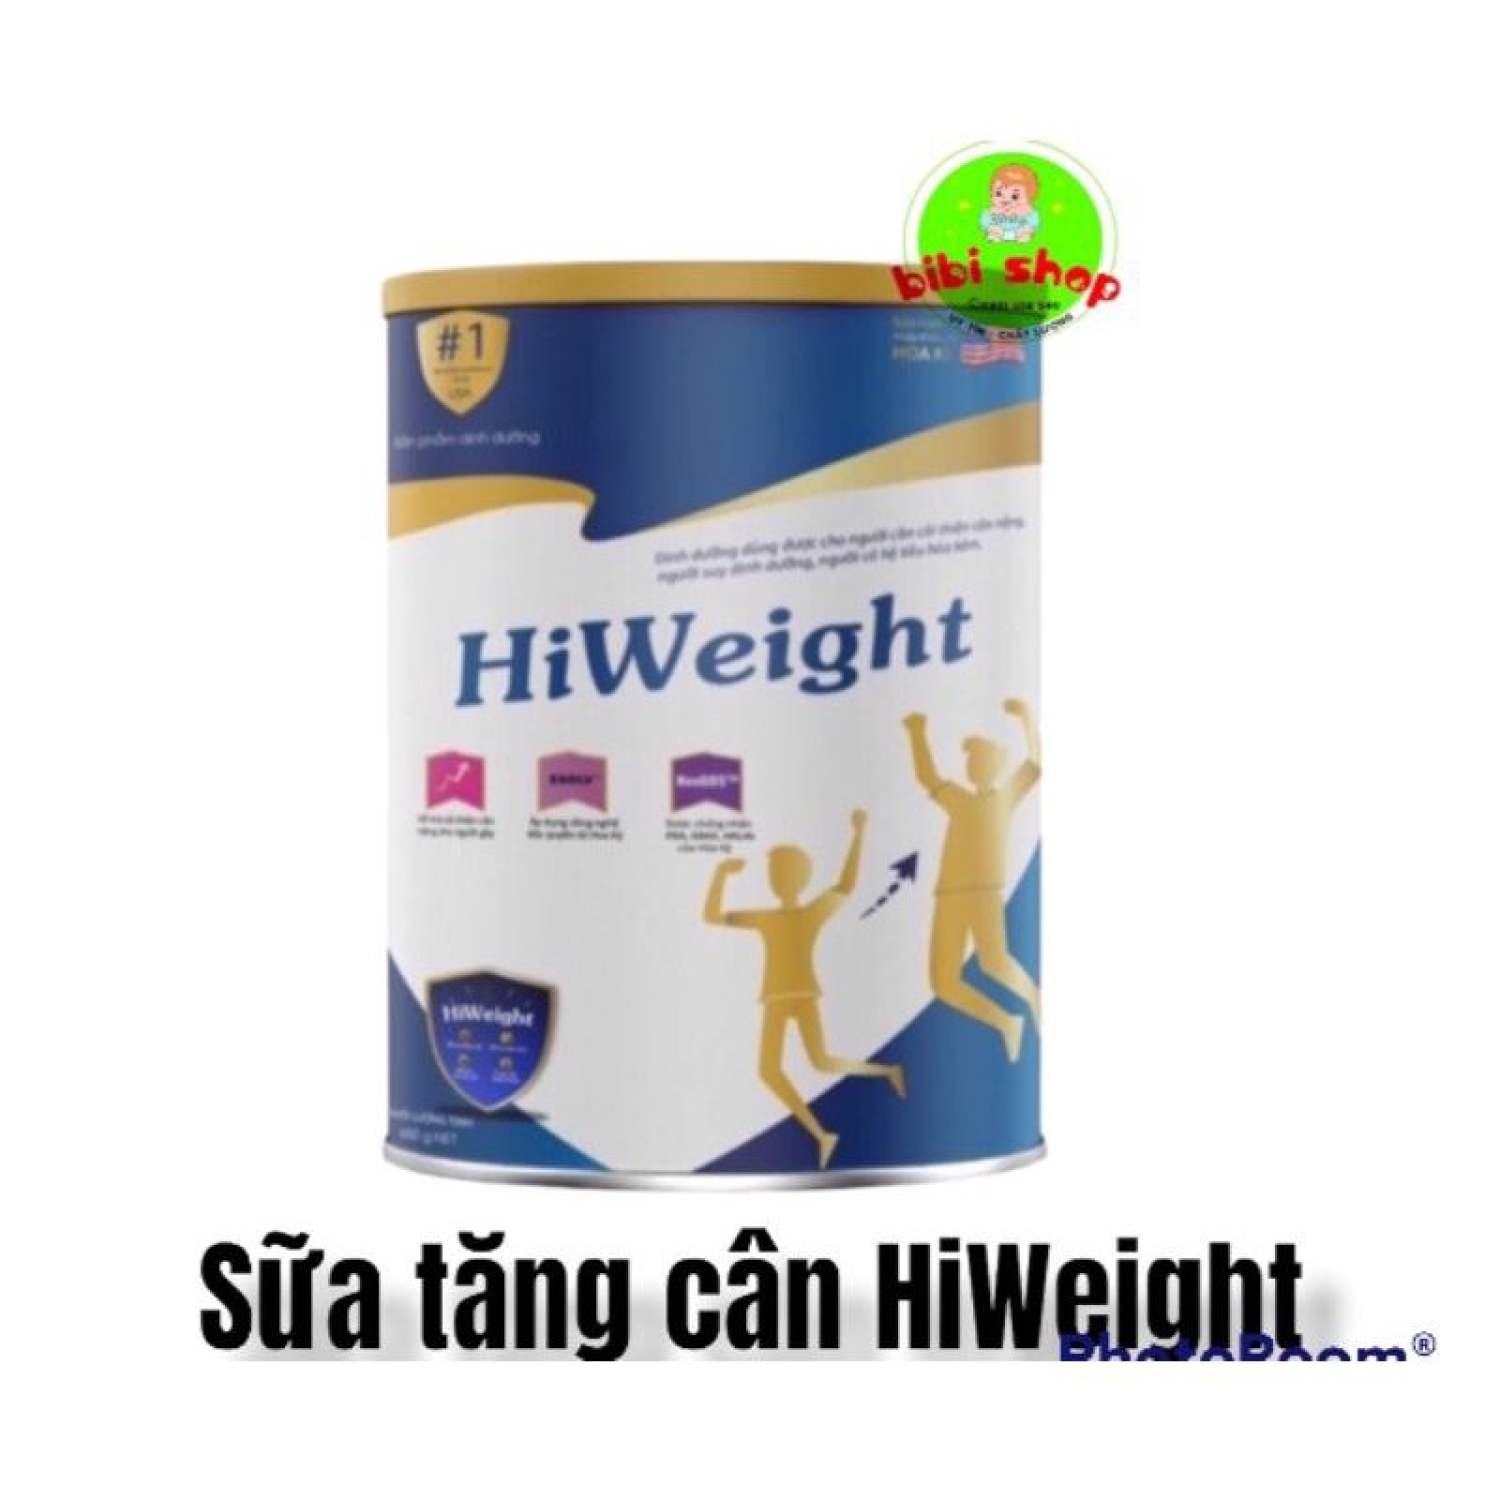 Sữa HiWeight sữa tăng cân hiweight 650gr chính hãng